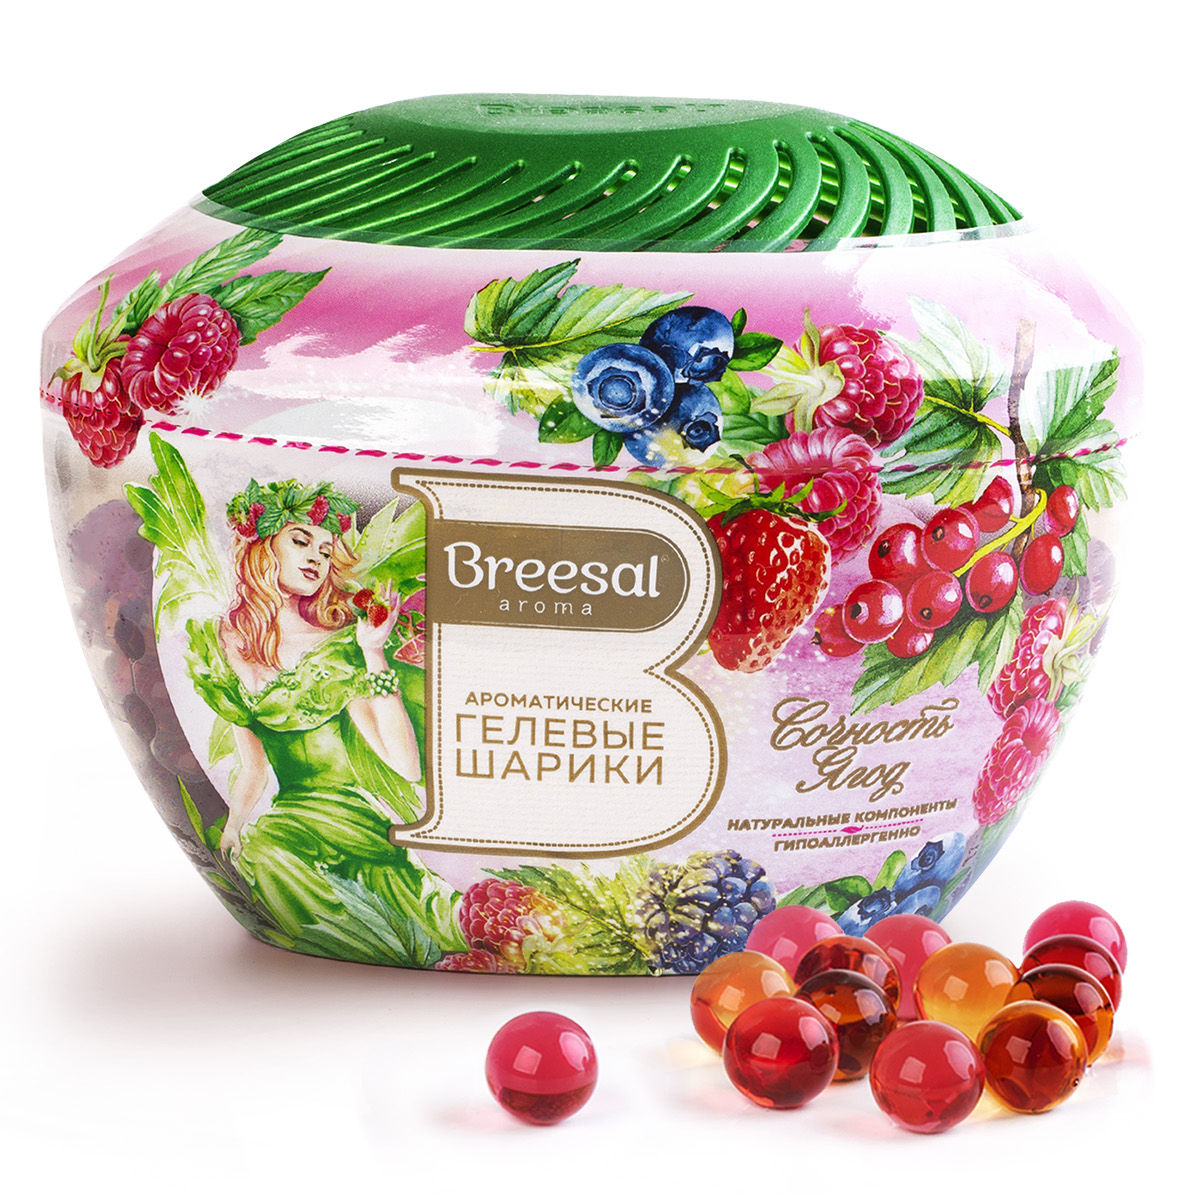 Ароматические гелевые шарики Breesal Fresh Drops Сочность ягод, 215 мл пеленки шестислойные гелевые для животных 60 х 45 см 5 шт